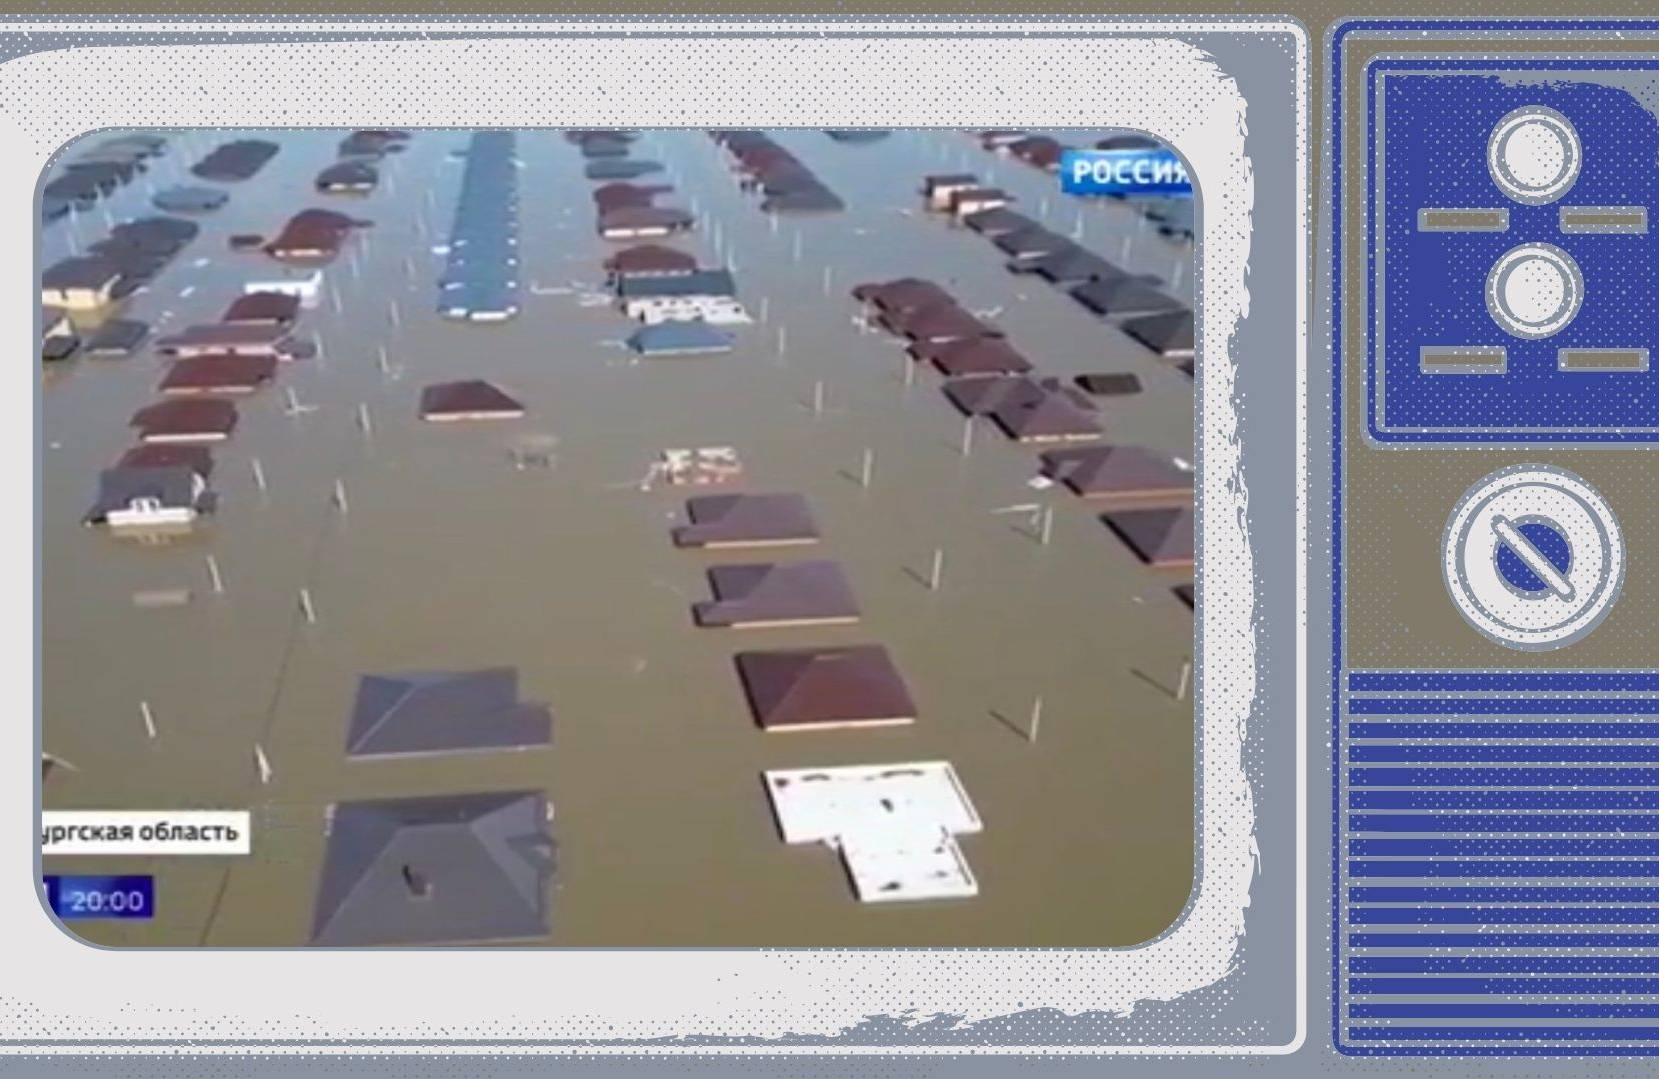 Zdjęcie osiedla domów zalanych pod dach. Powódź w Rosji